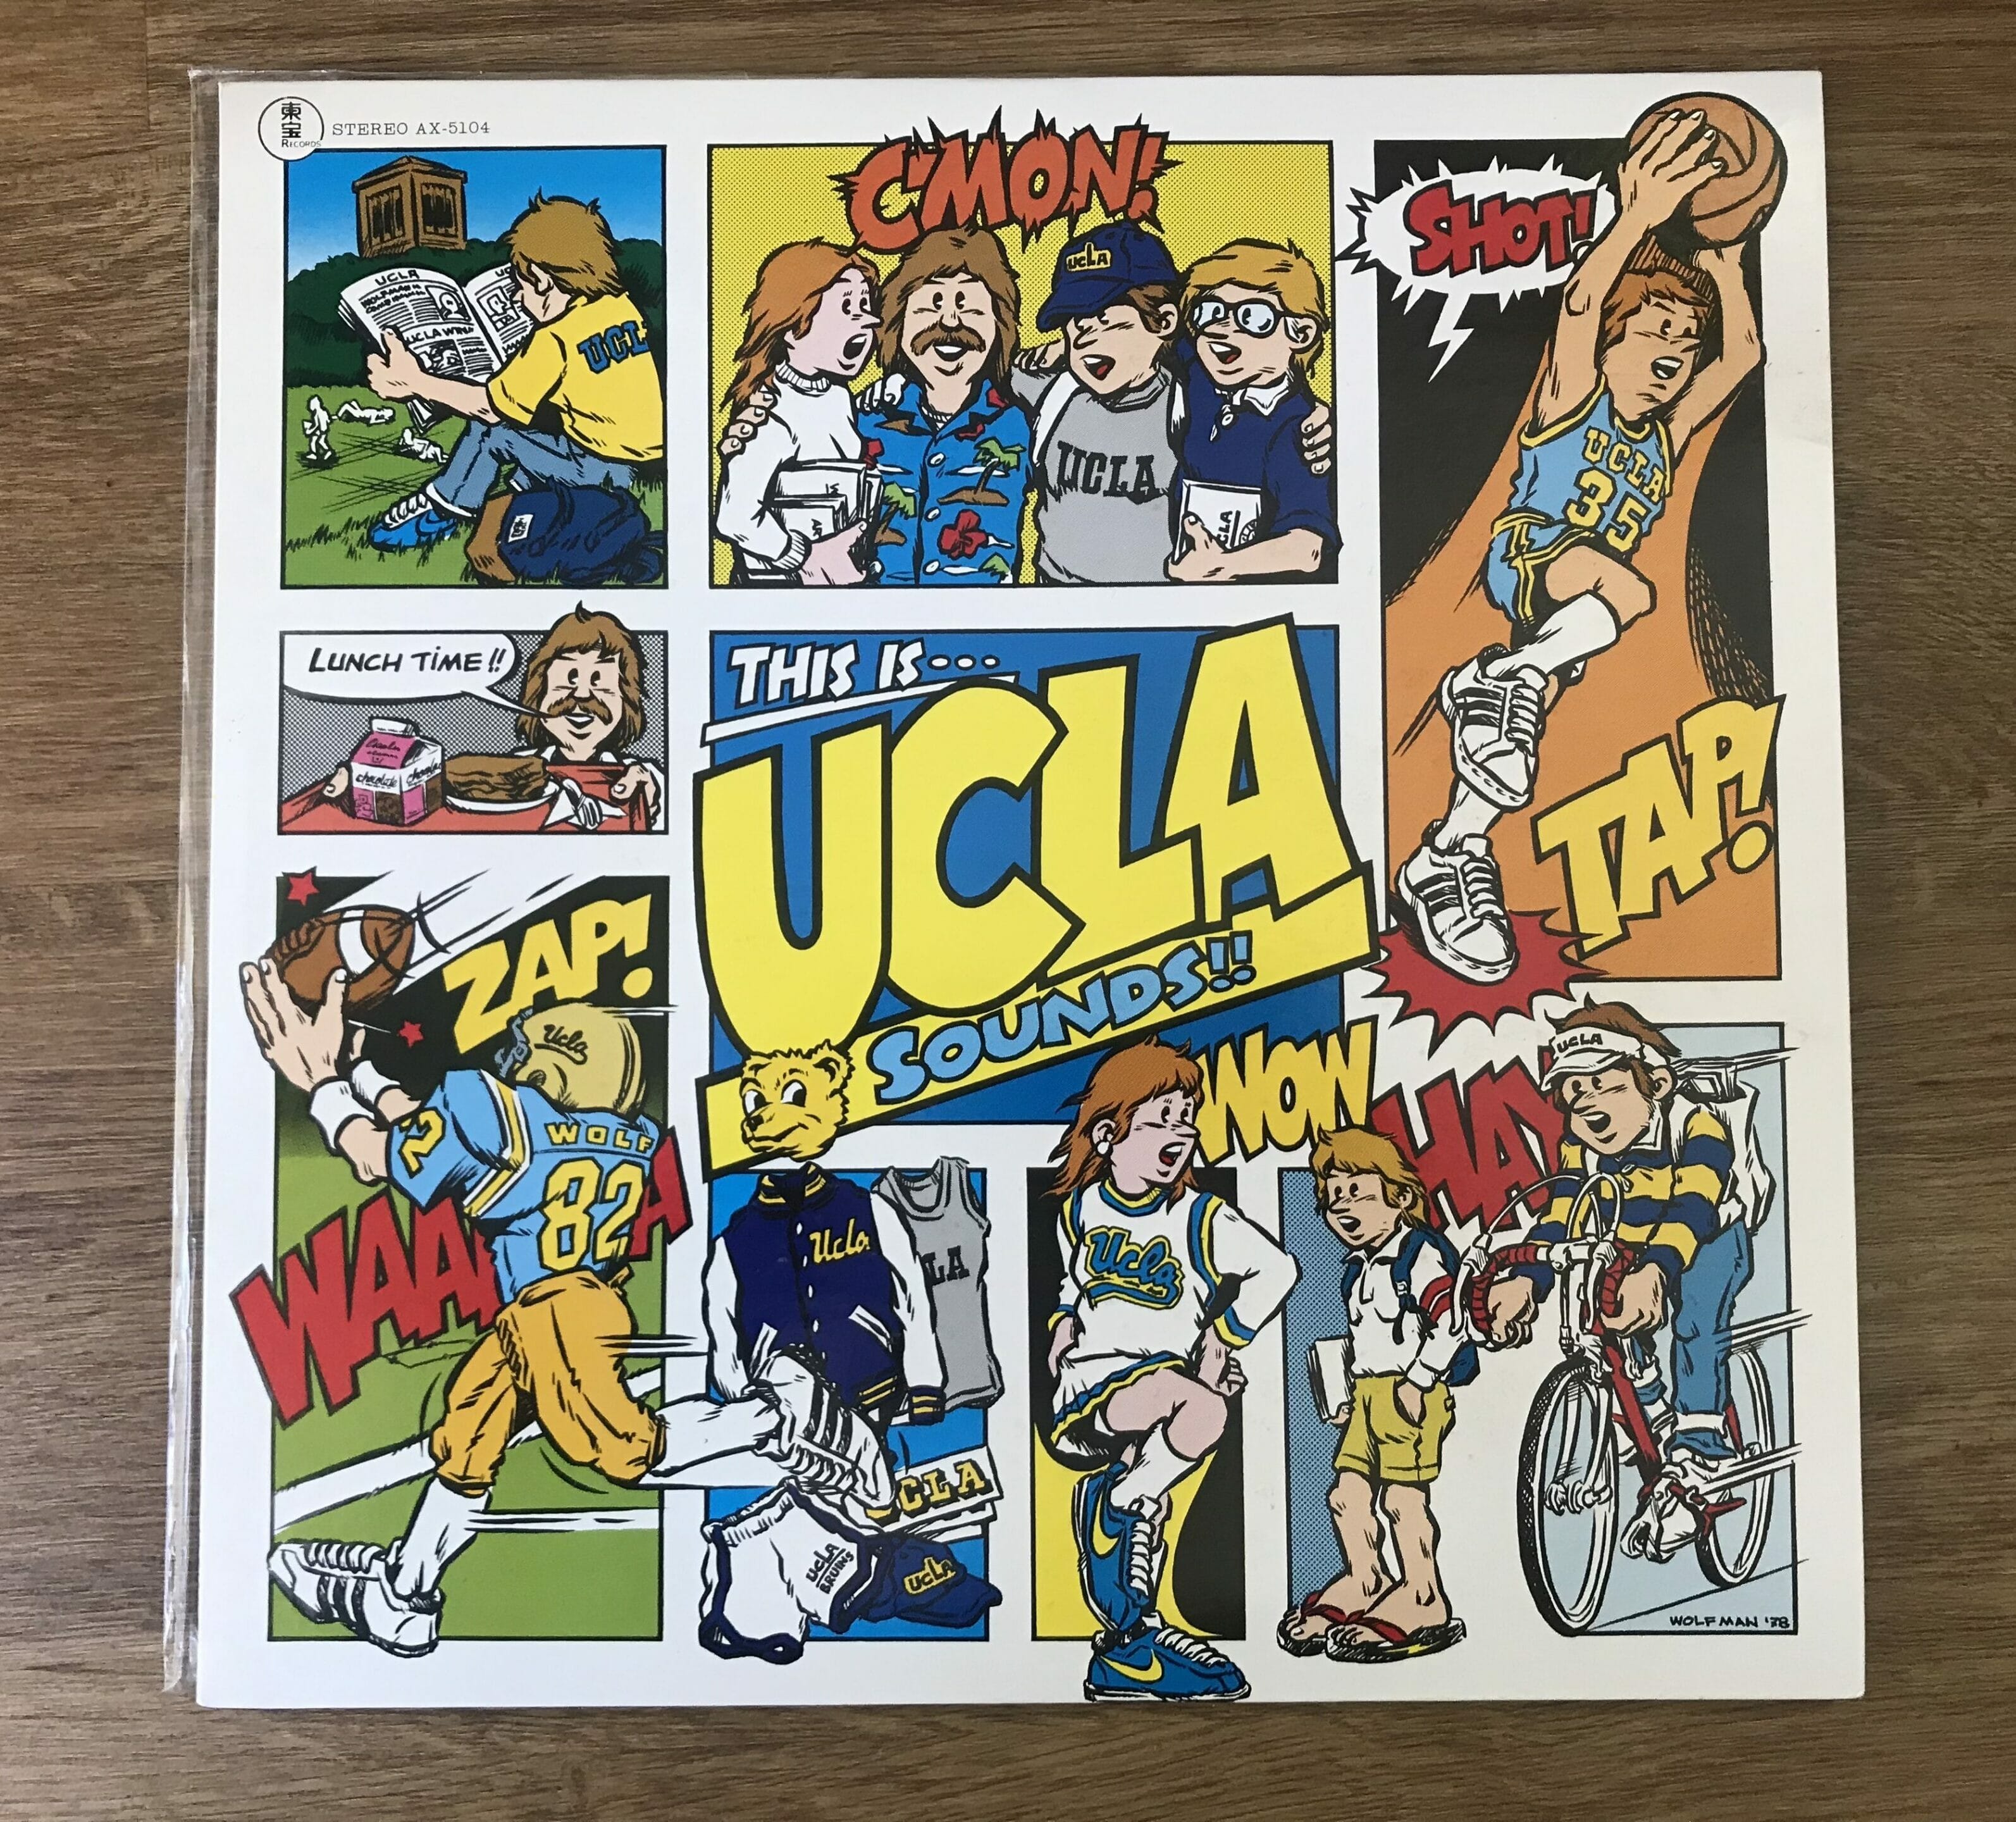 UCLAのサウンドスケープレコード